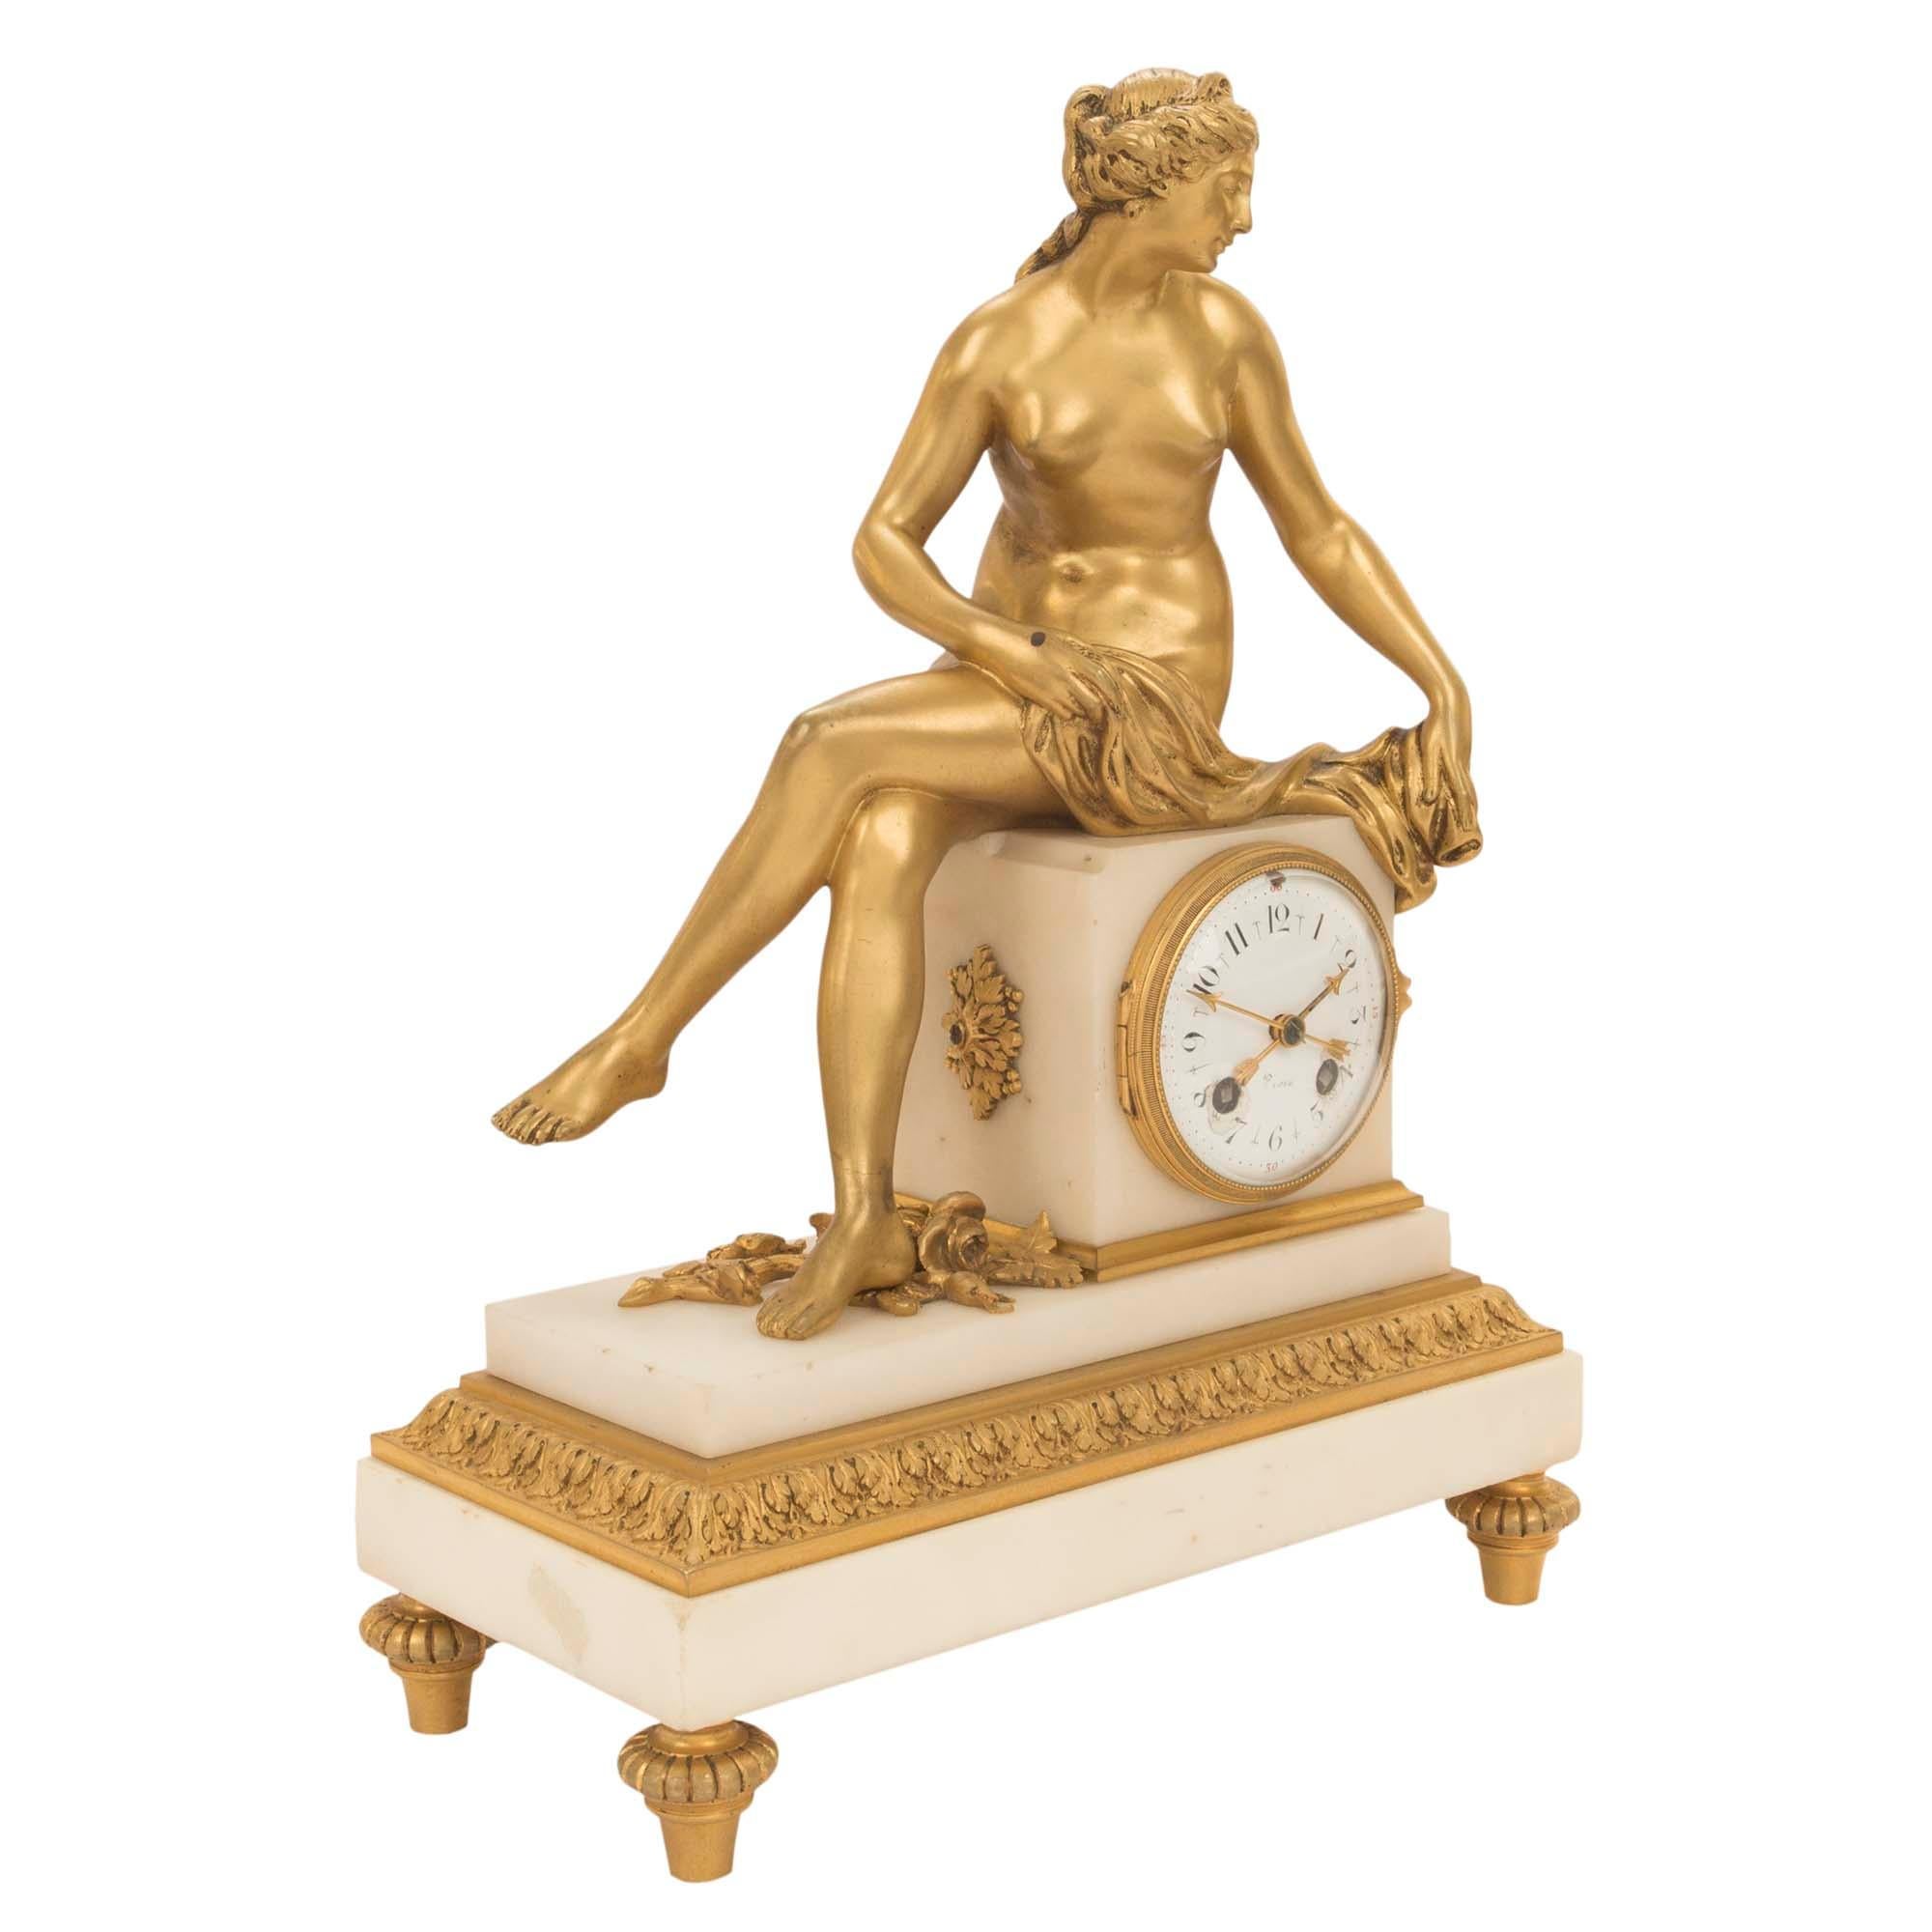 Une très belle pendule française du milieu du 19ème siècle, de style Louis XVI, en bronze doré et marbre blanc de Carrare. La pendule est surélevée par des supports en bronze doré en forme de topie. La base rectangulaire en marbre est décorée d'une